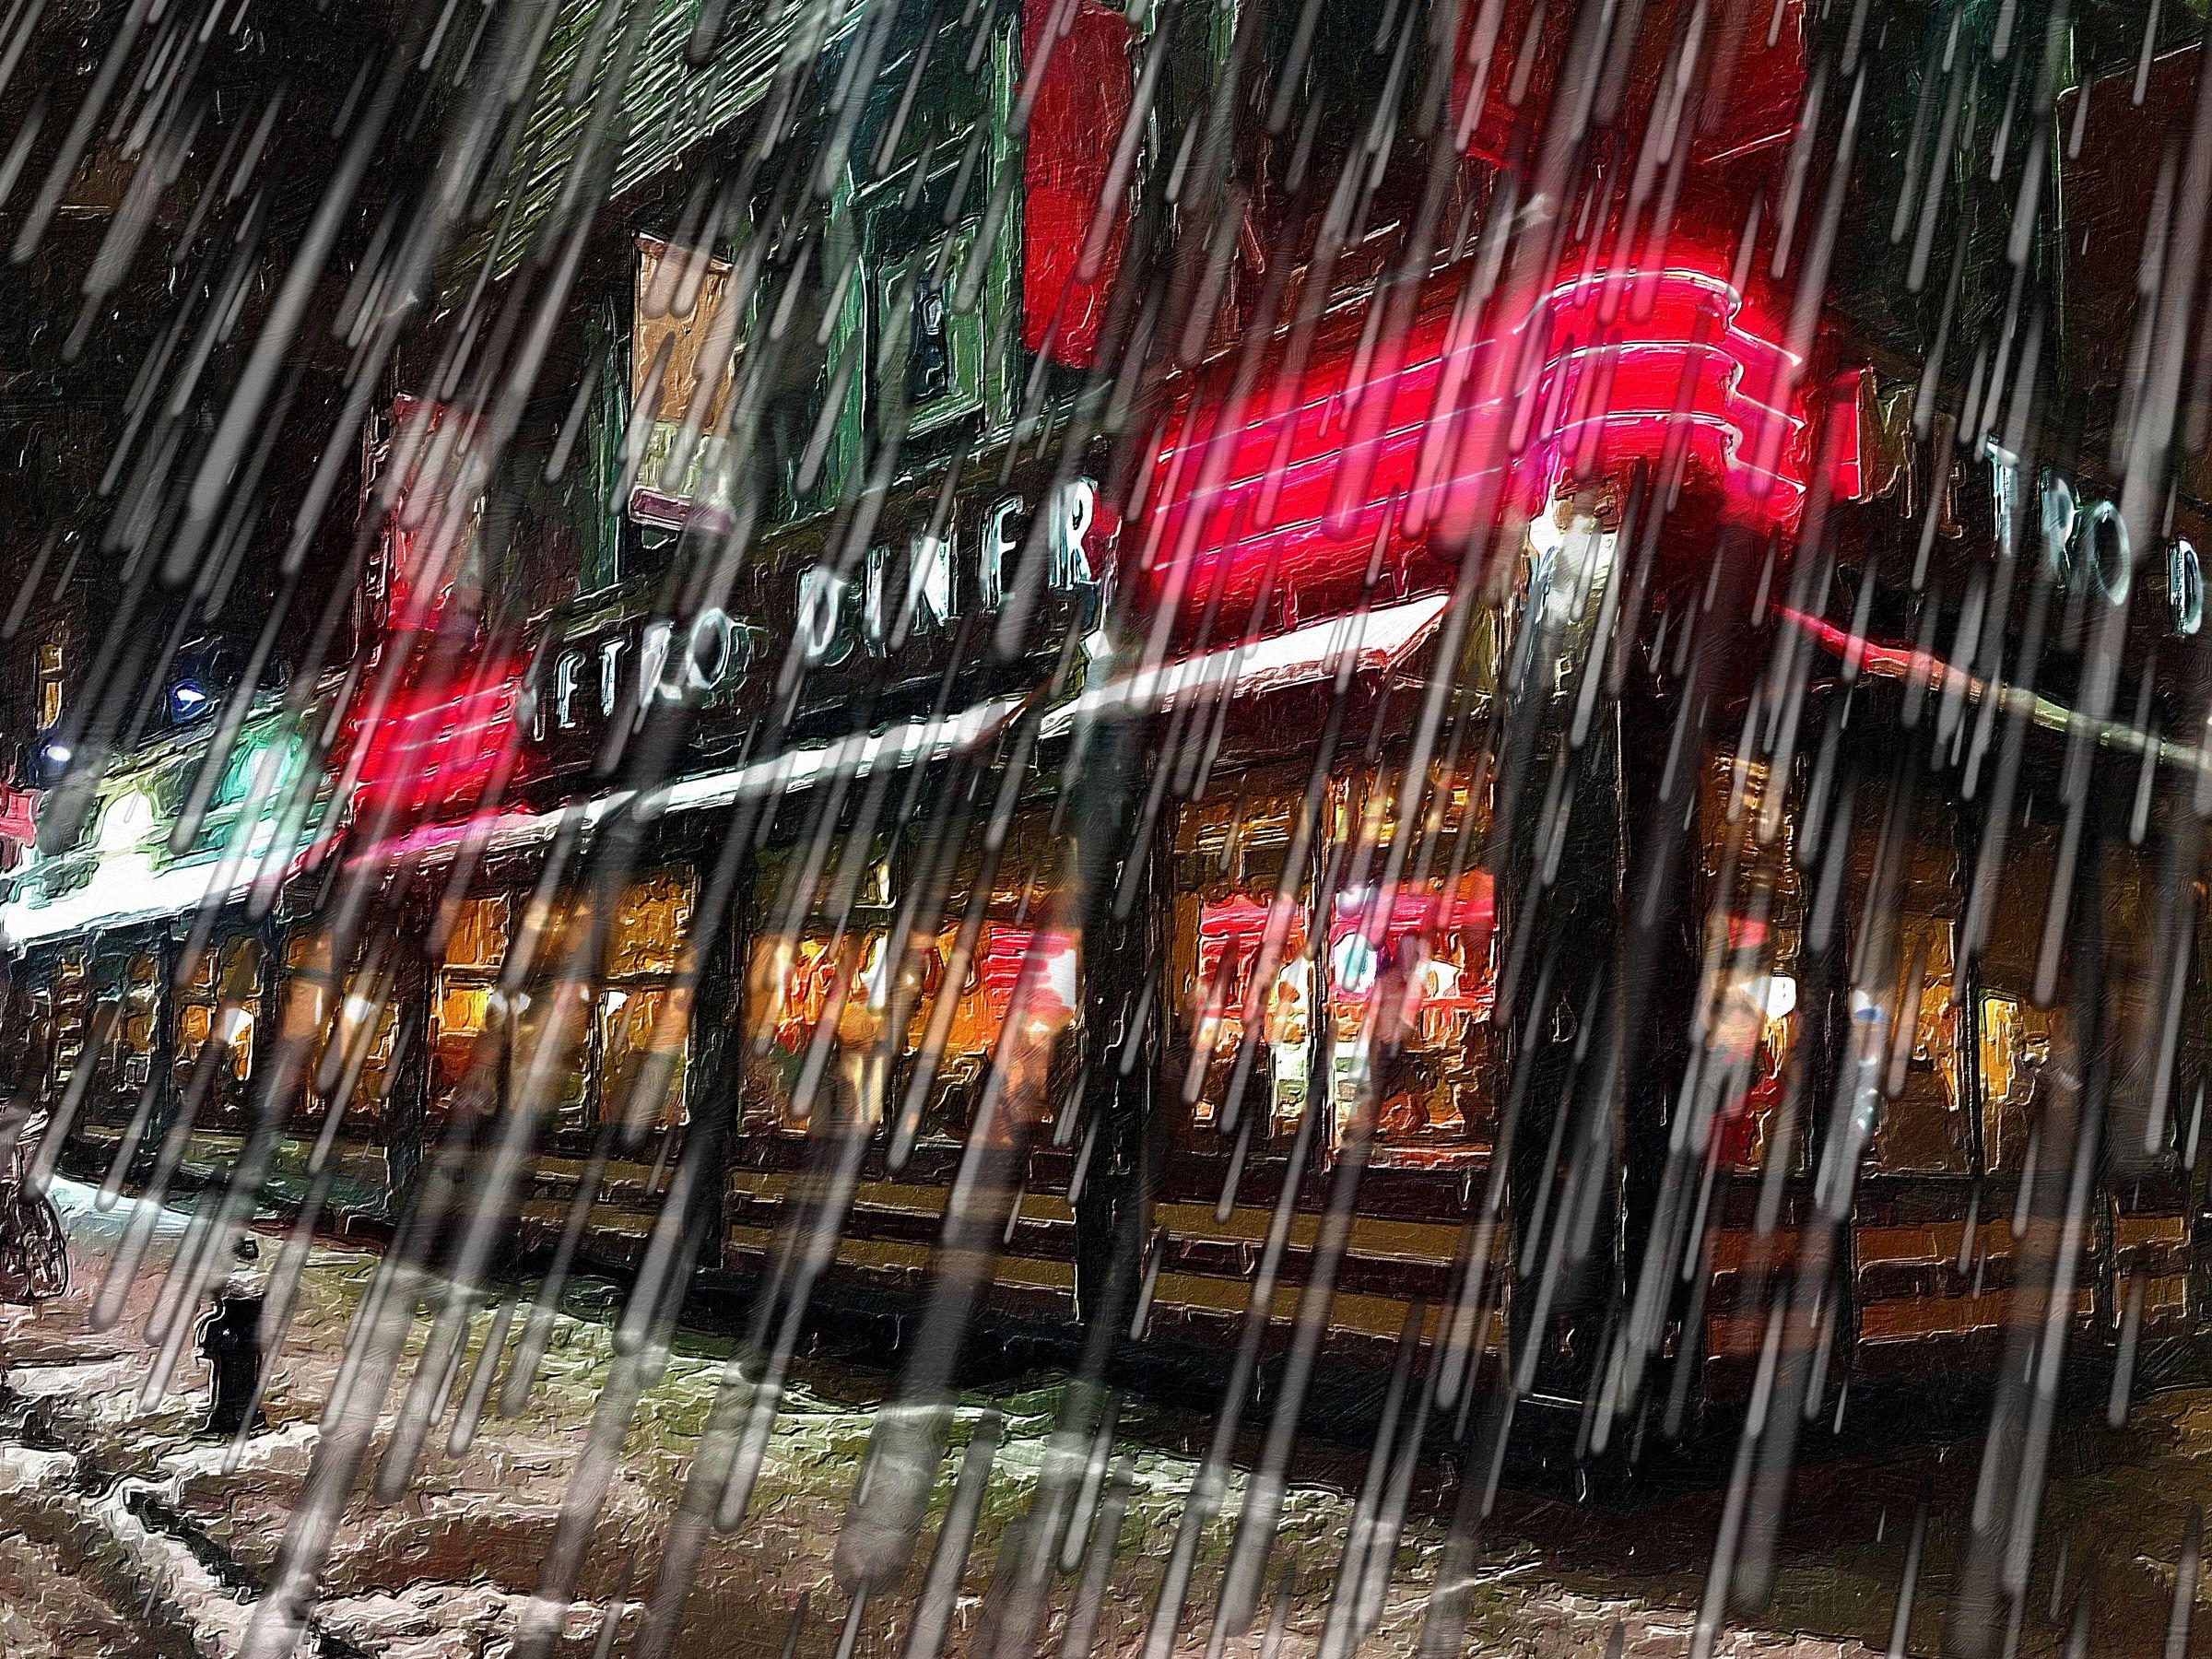 New York City Skyline Rain Snow Storm Diner, Mixed Media on Canvas - Mixed Media Art by Tony Rubino